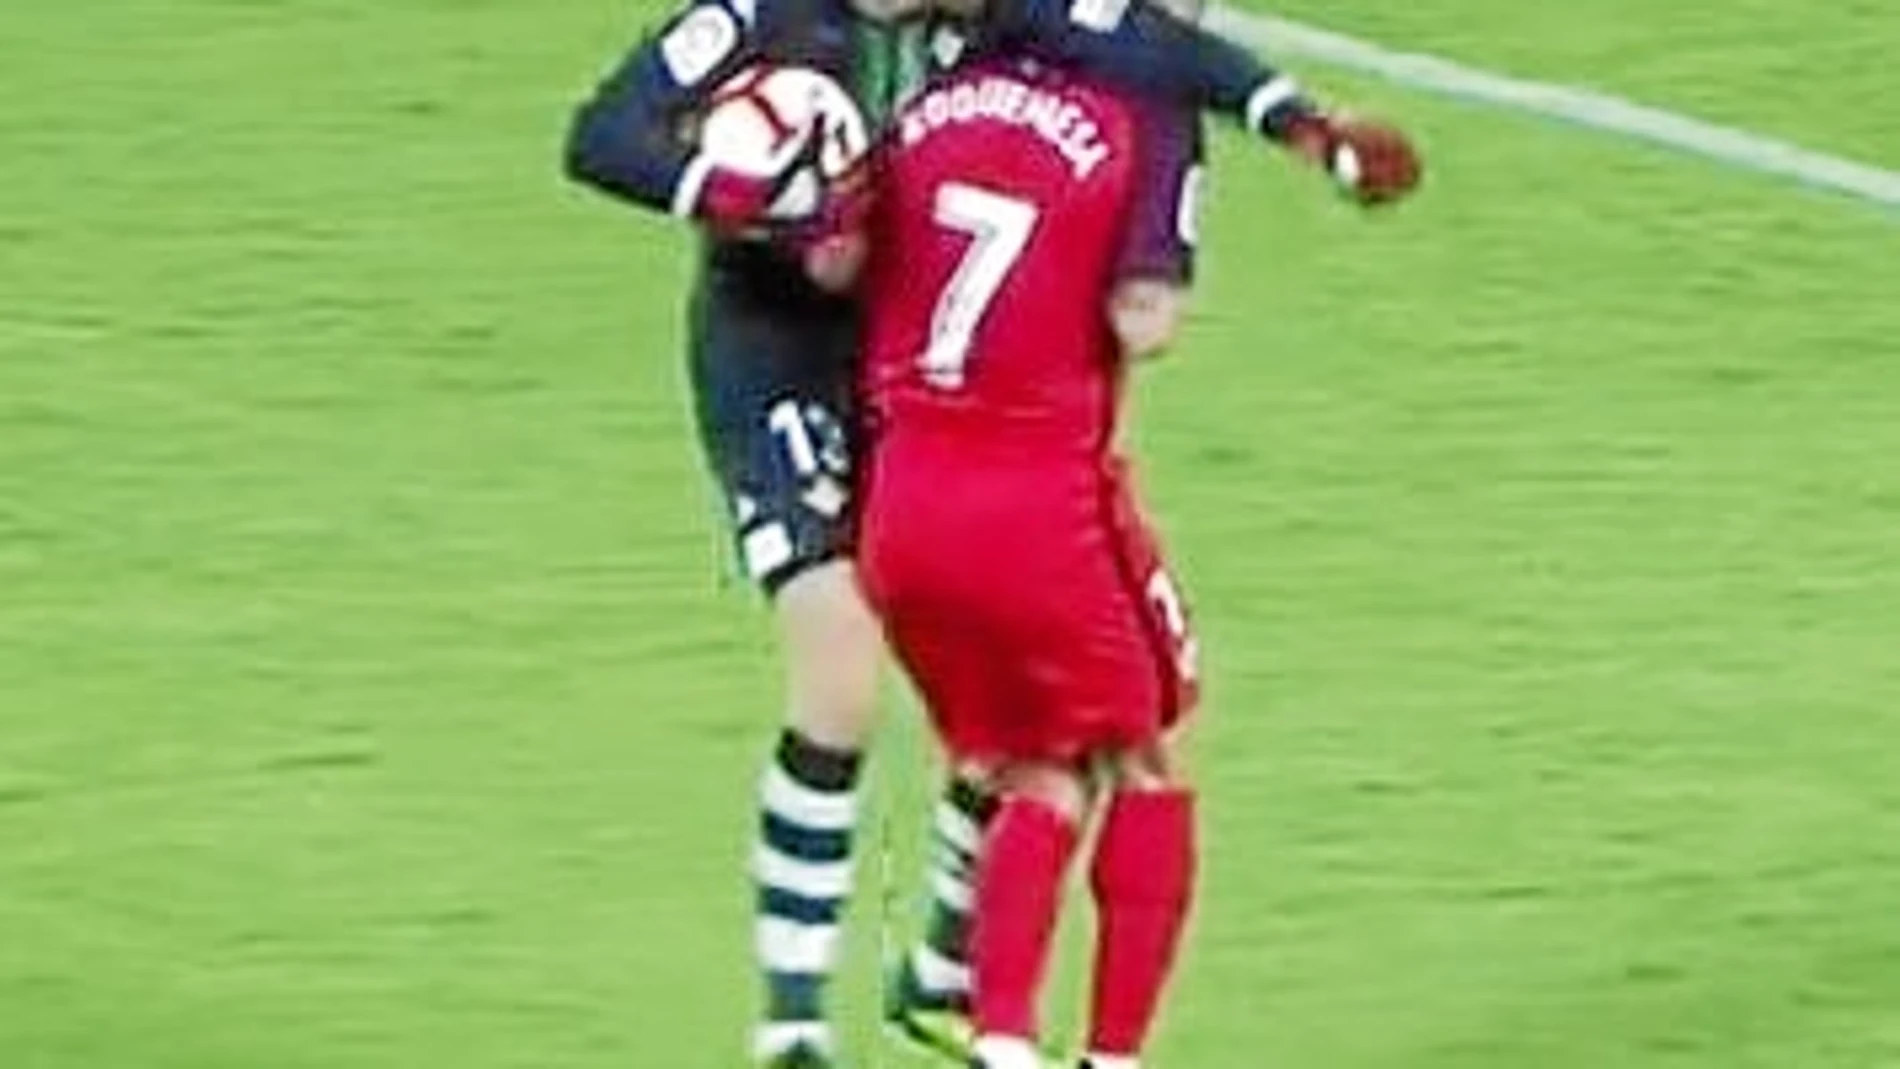 Este choque entre Roque Mesa y Pau López supuso la expulsión del jugador sevillista, aunque luego Competición corrigió al árbitro / Efe